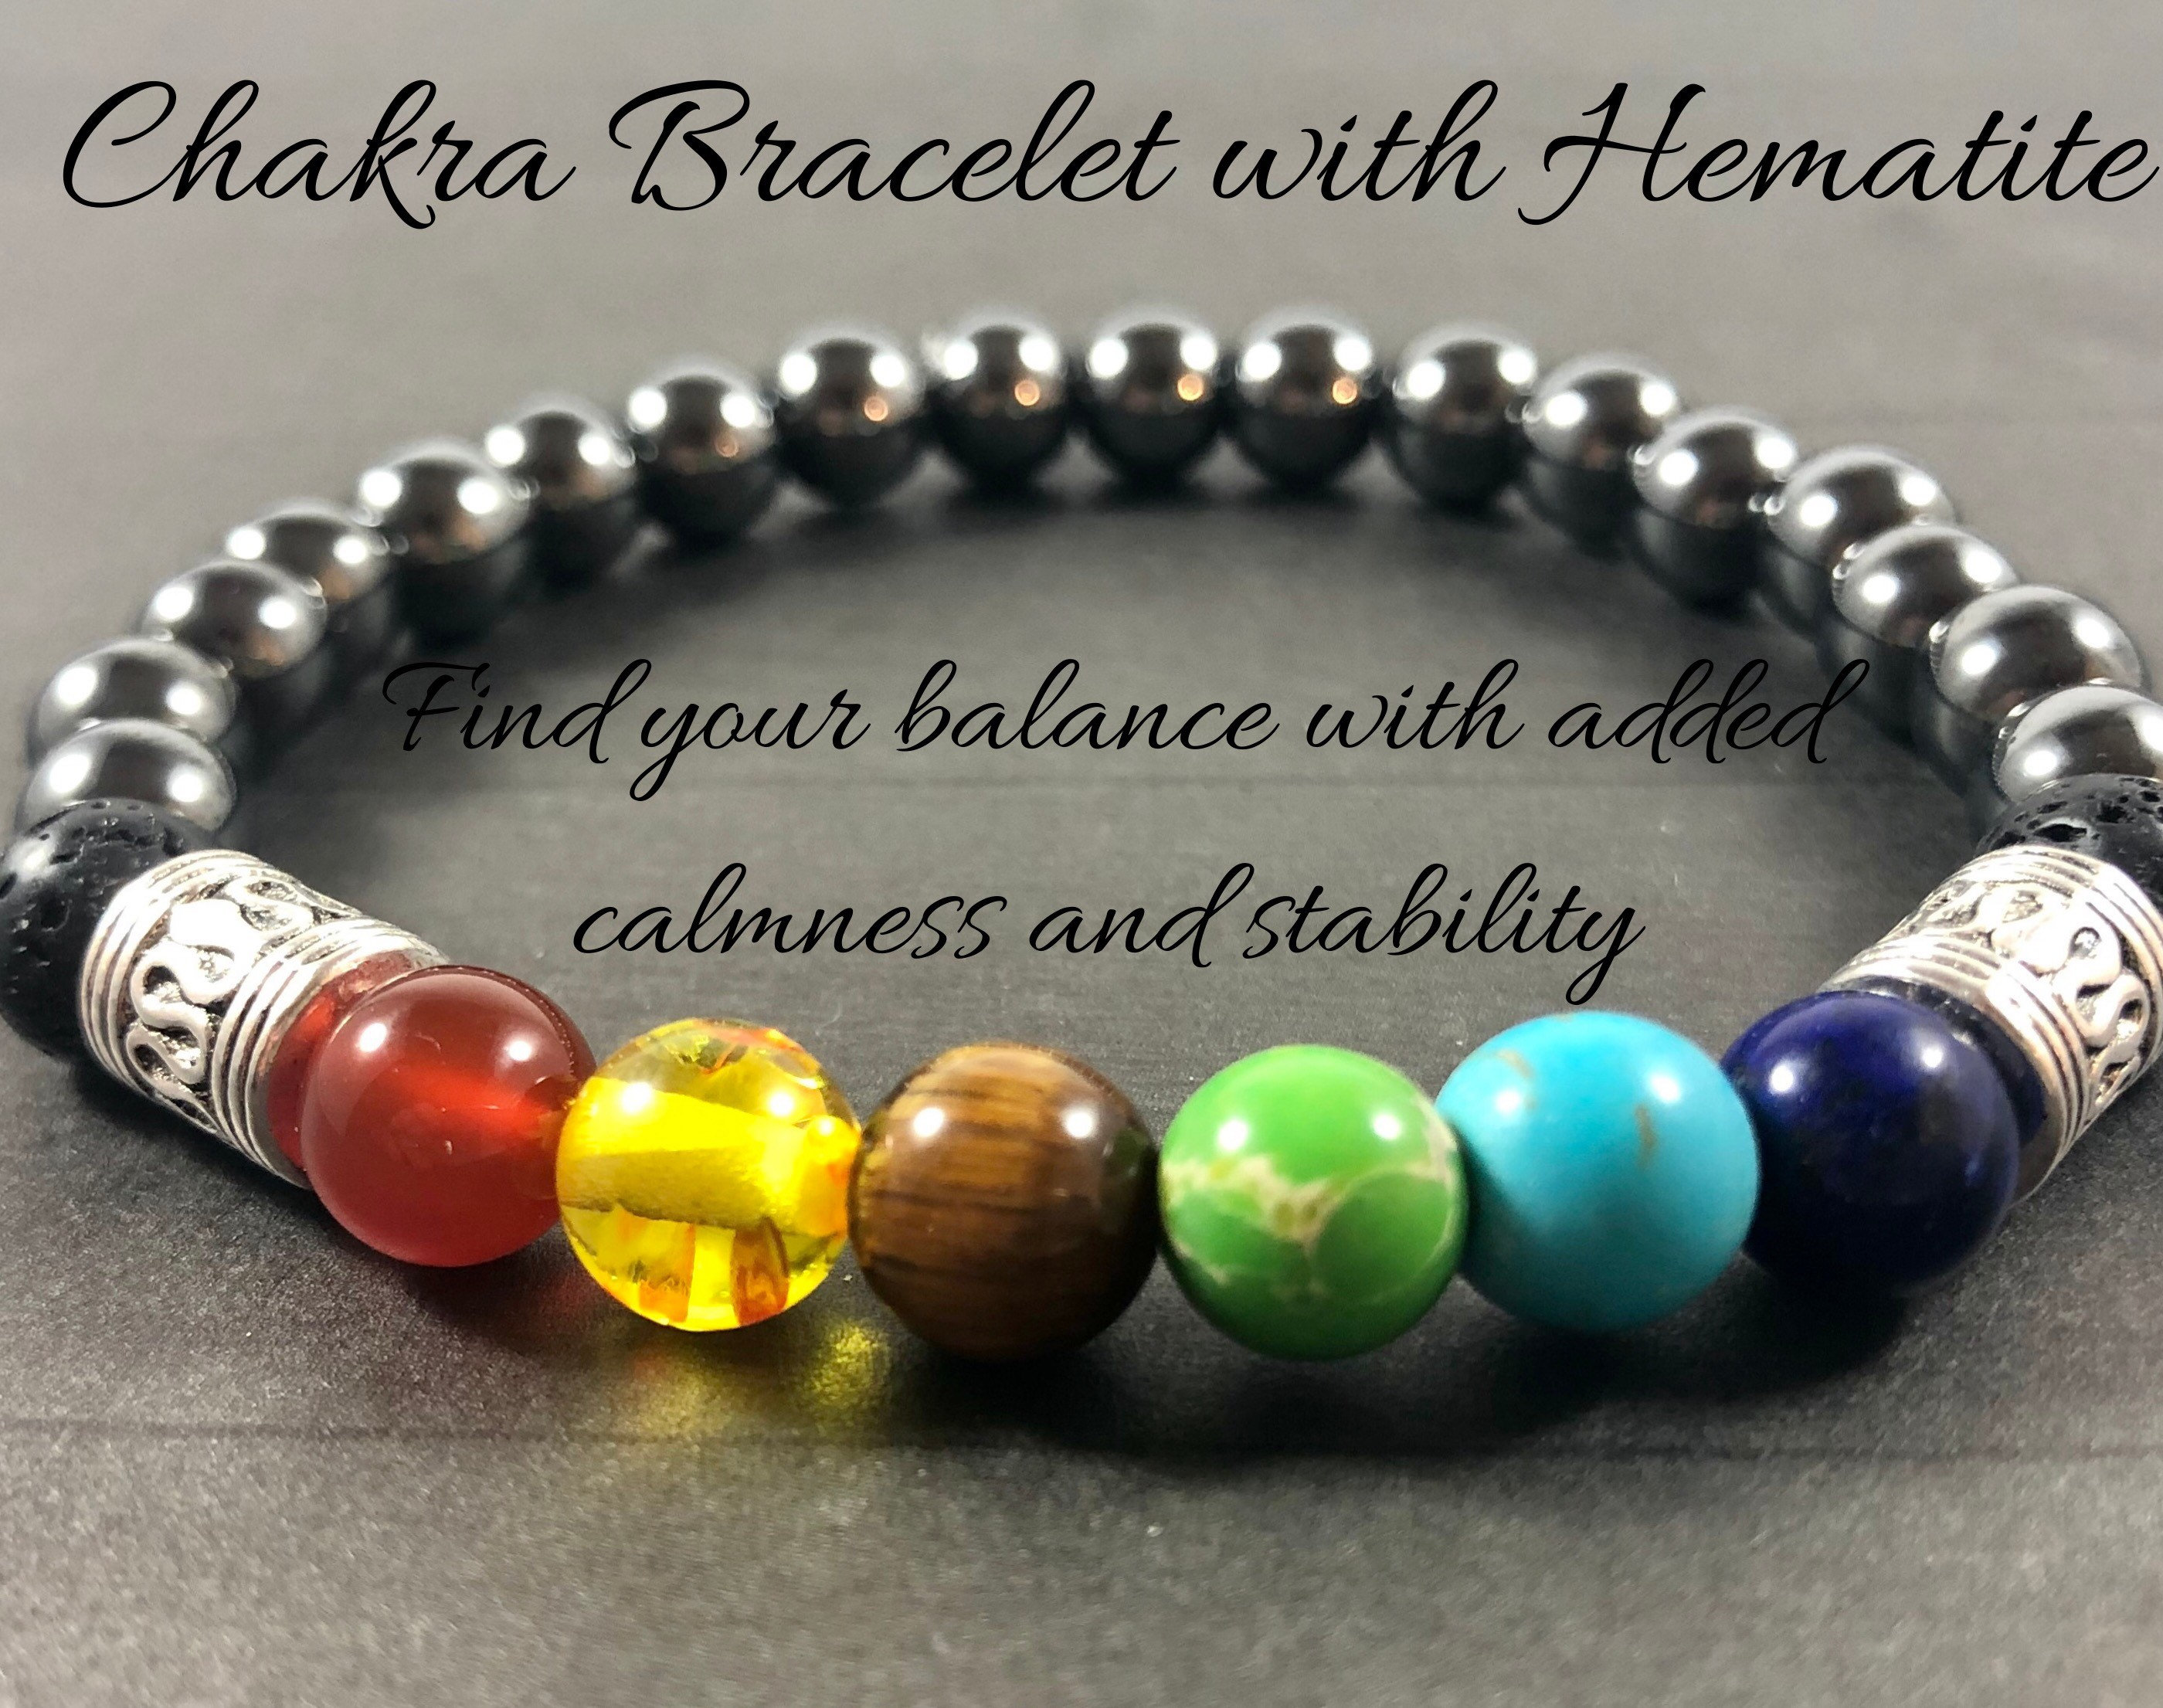 Hematite Chakra Bracelet with 7 Gemstones 8mm Mala Yoga Meditation